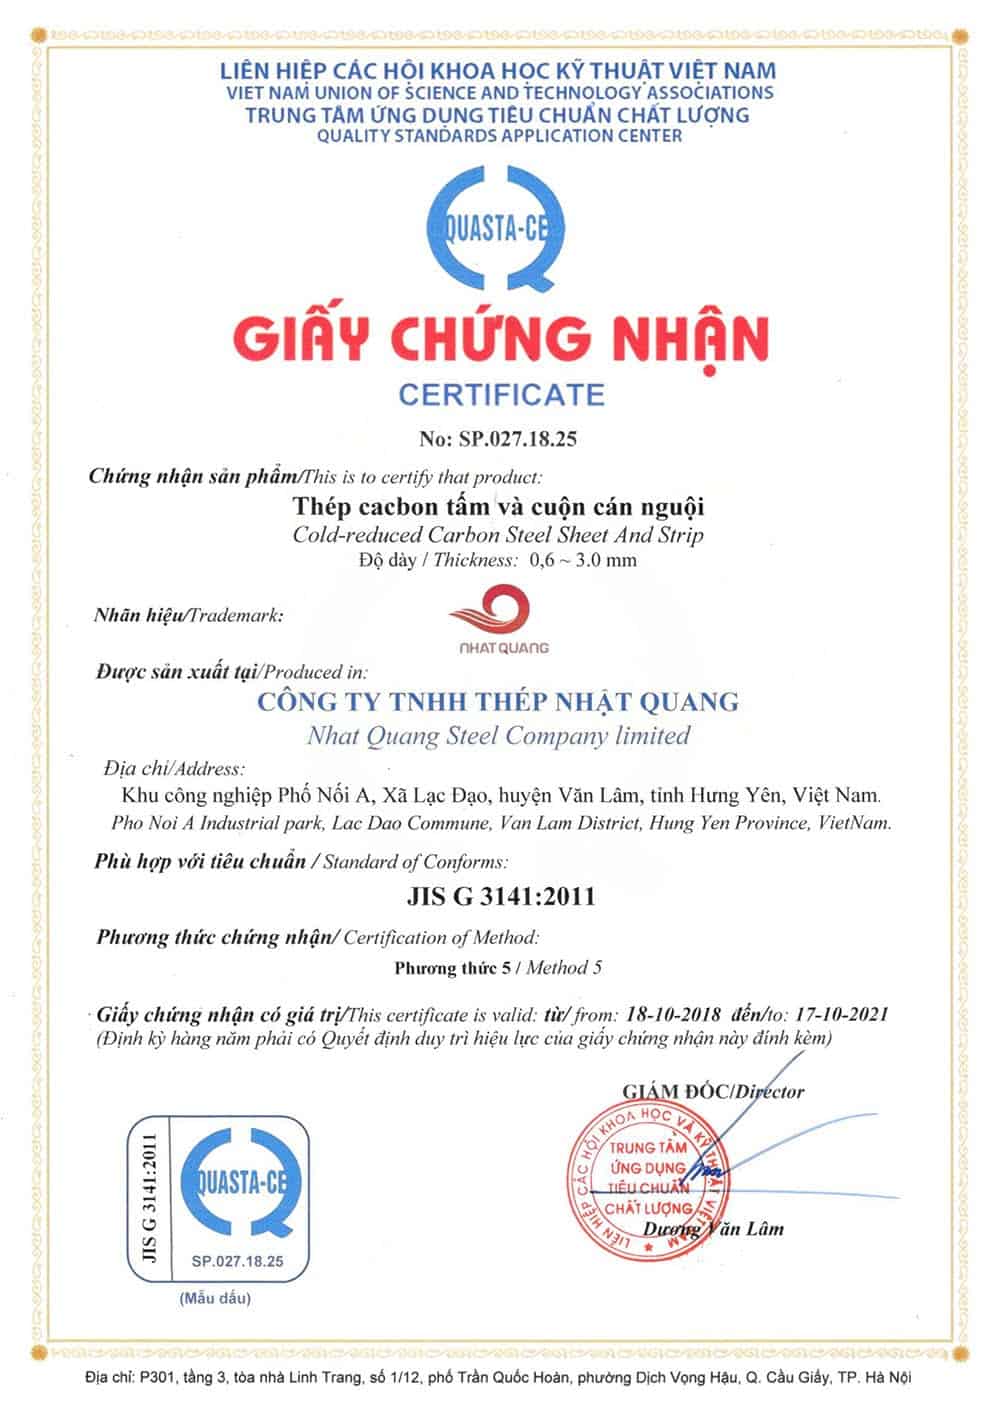 Giấy chứng nhận đạt tiêu chuẩn JIS 3141:2001 của thép cacbon tấm và cuộn cán nguội Nhật Quang